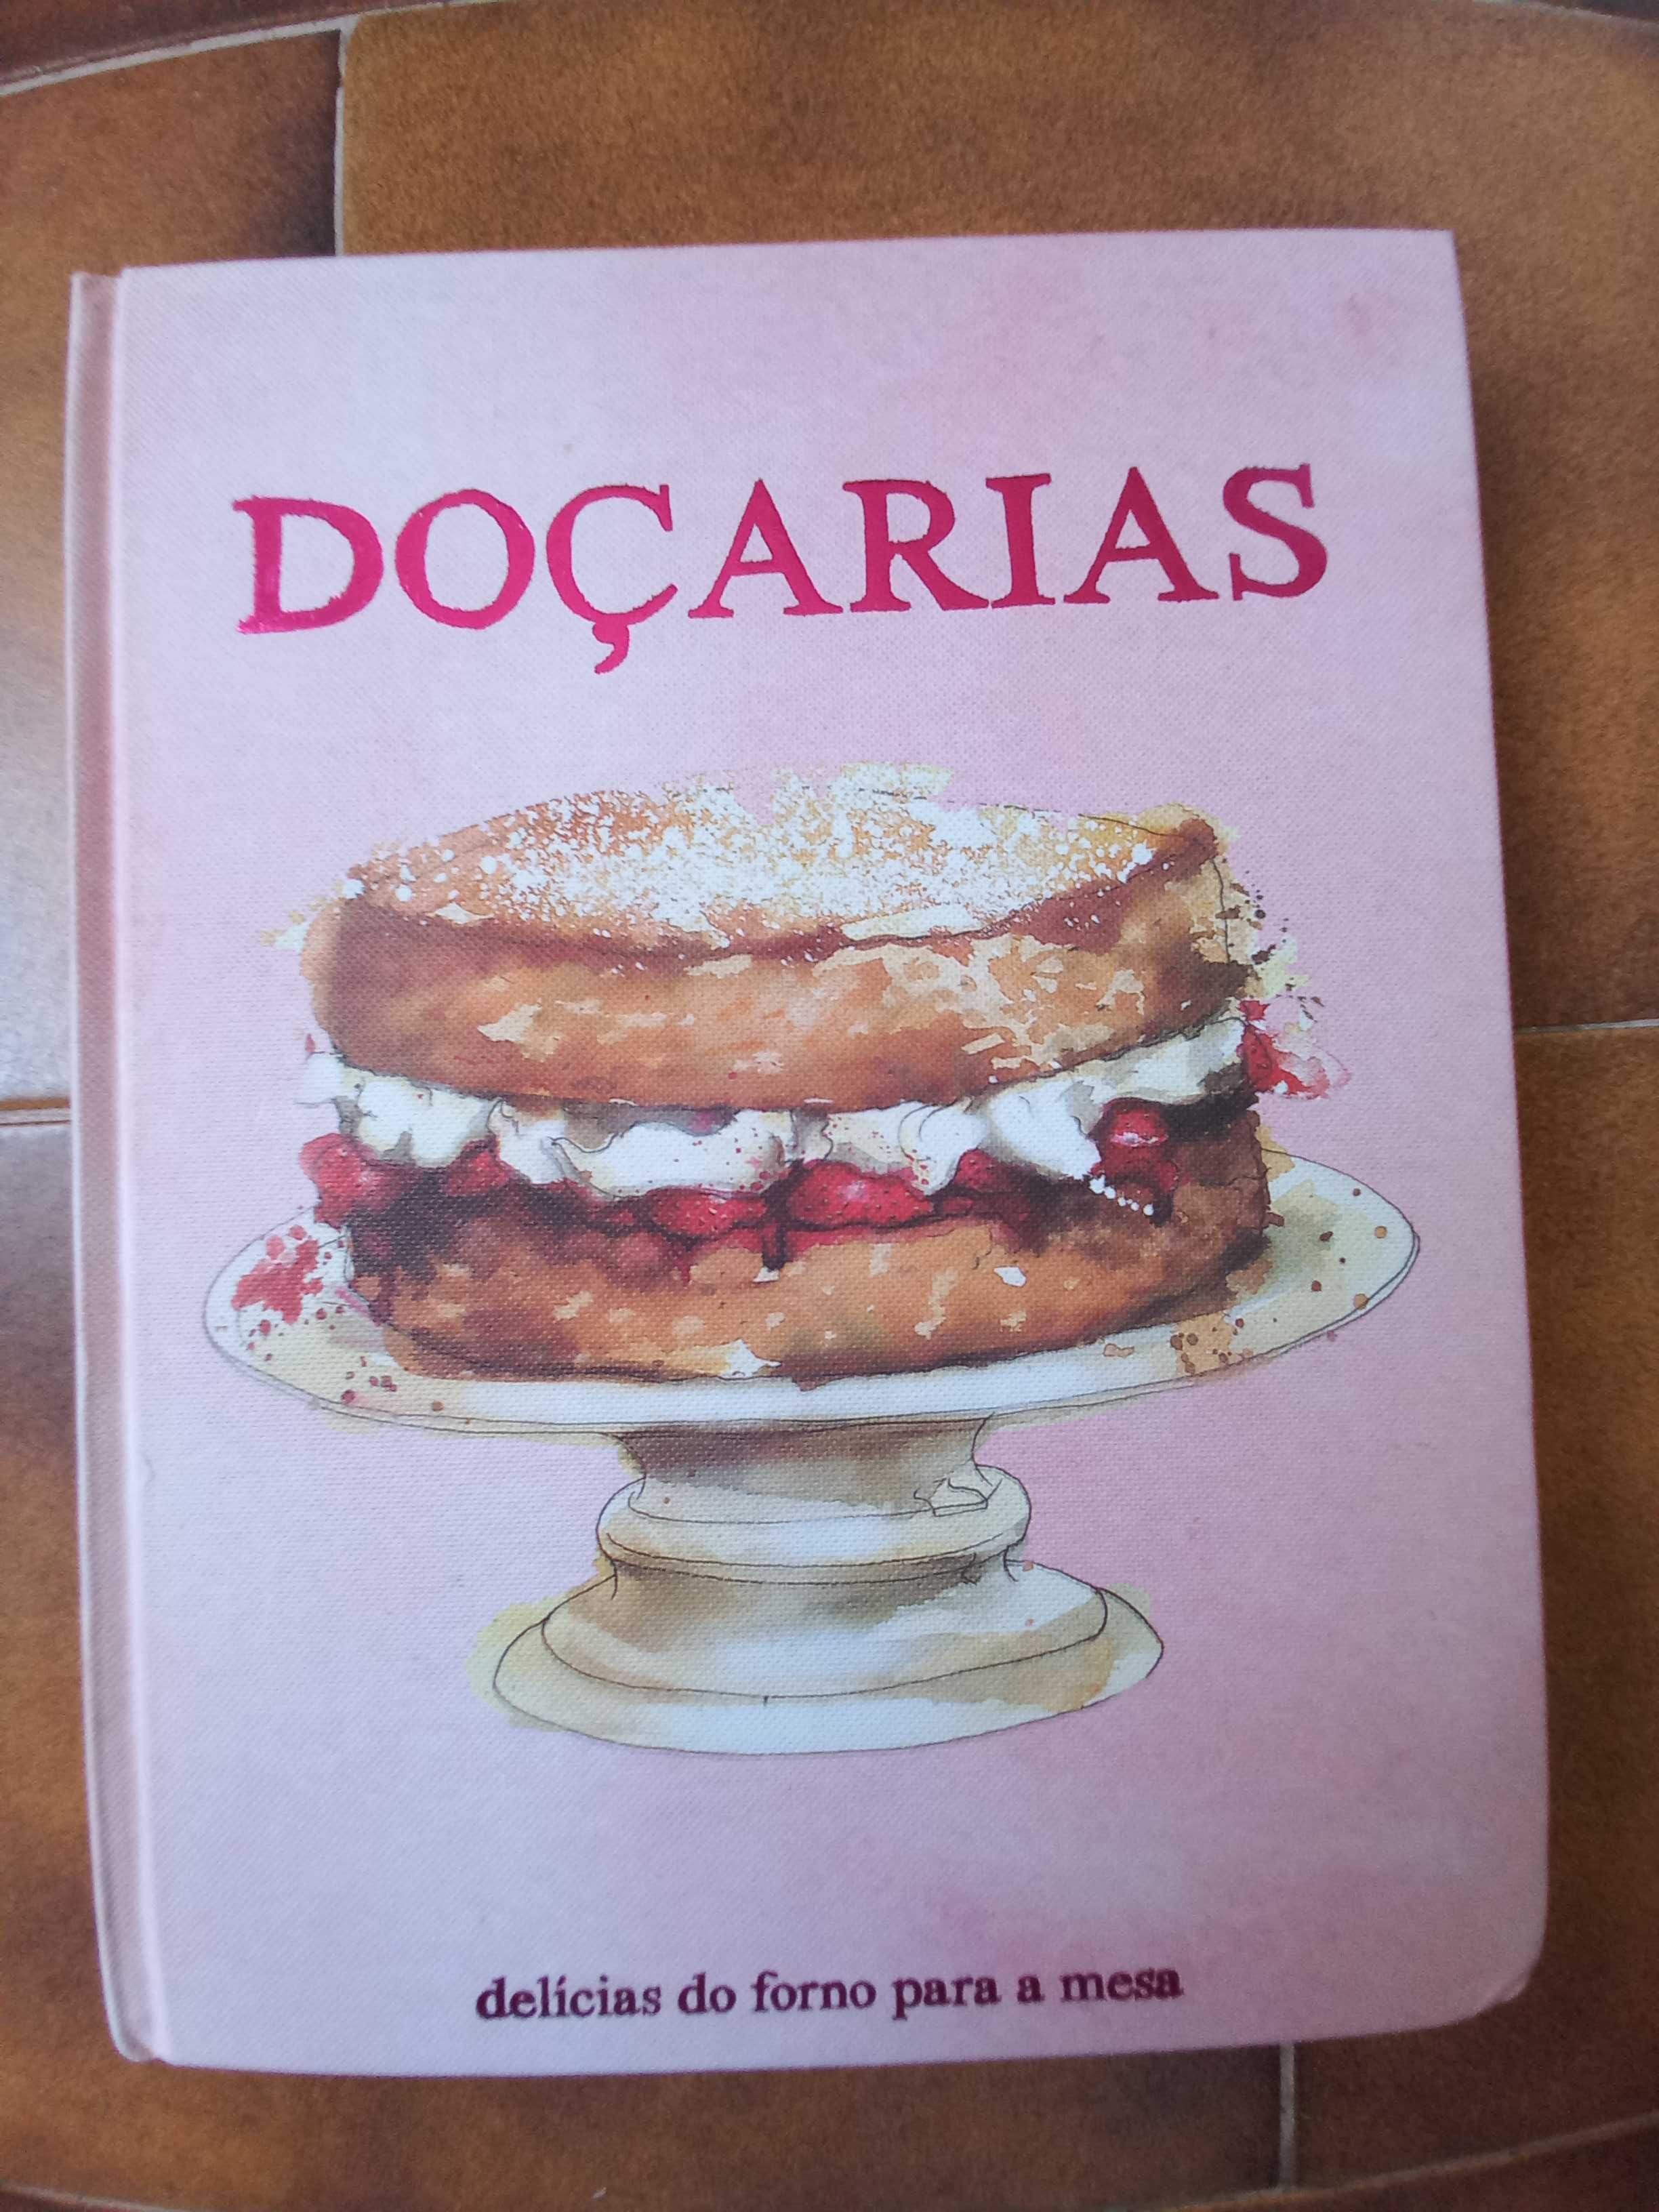 Livros de Culinária sobre "Sopas" e "Doçarias"